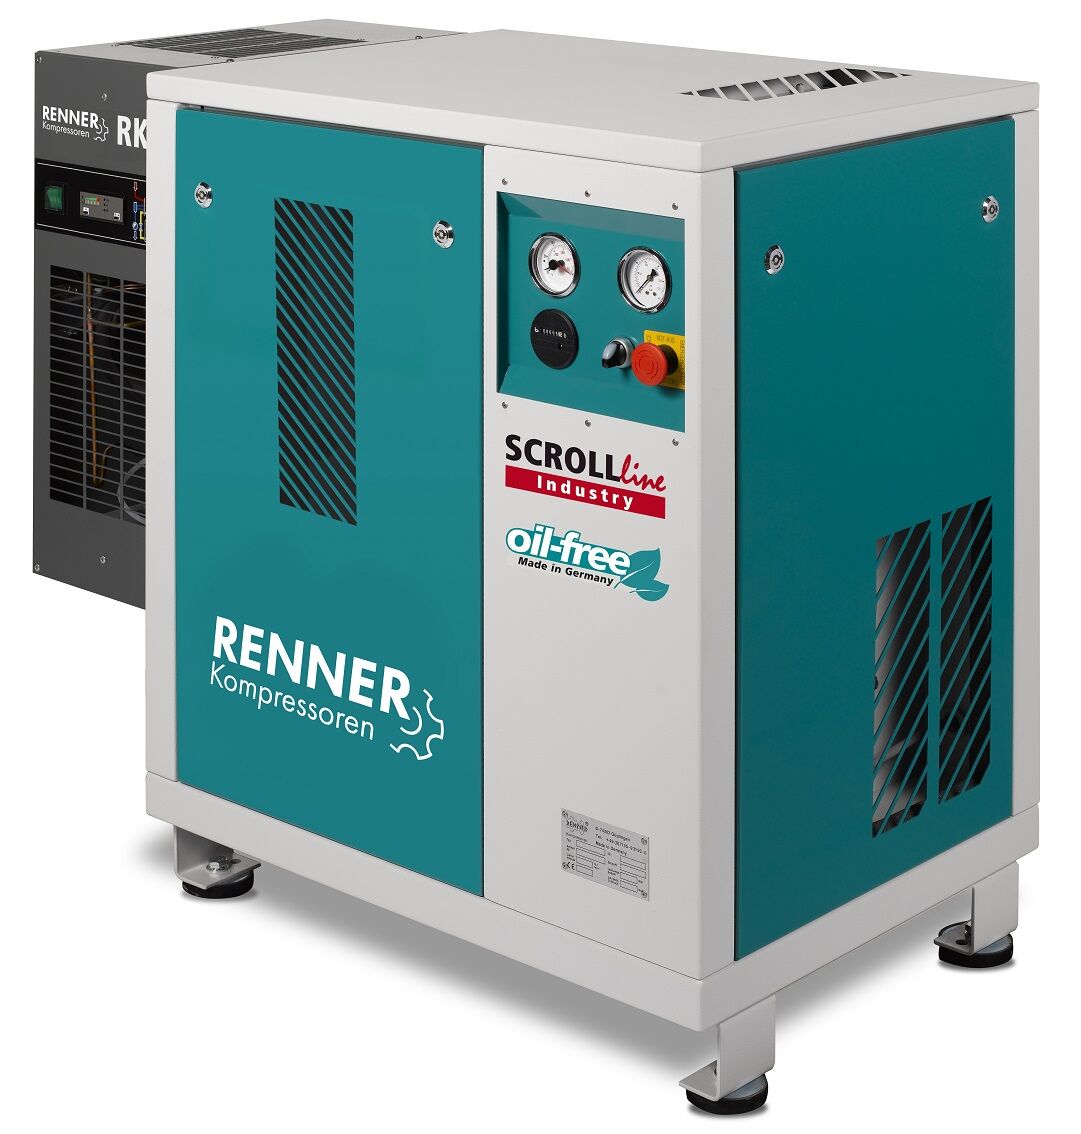 RENNER-Kompressor SLK-I 4,5 mit Kältetrockner - Industry ölfreier Scrollkompressor